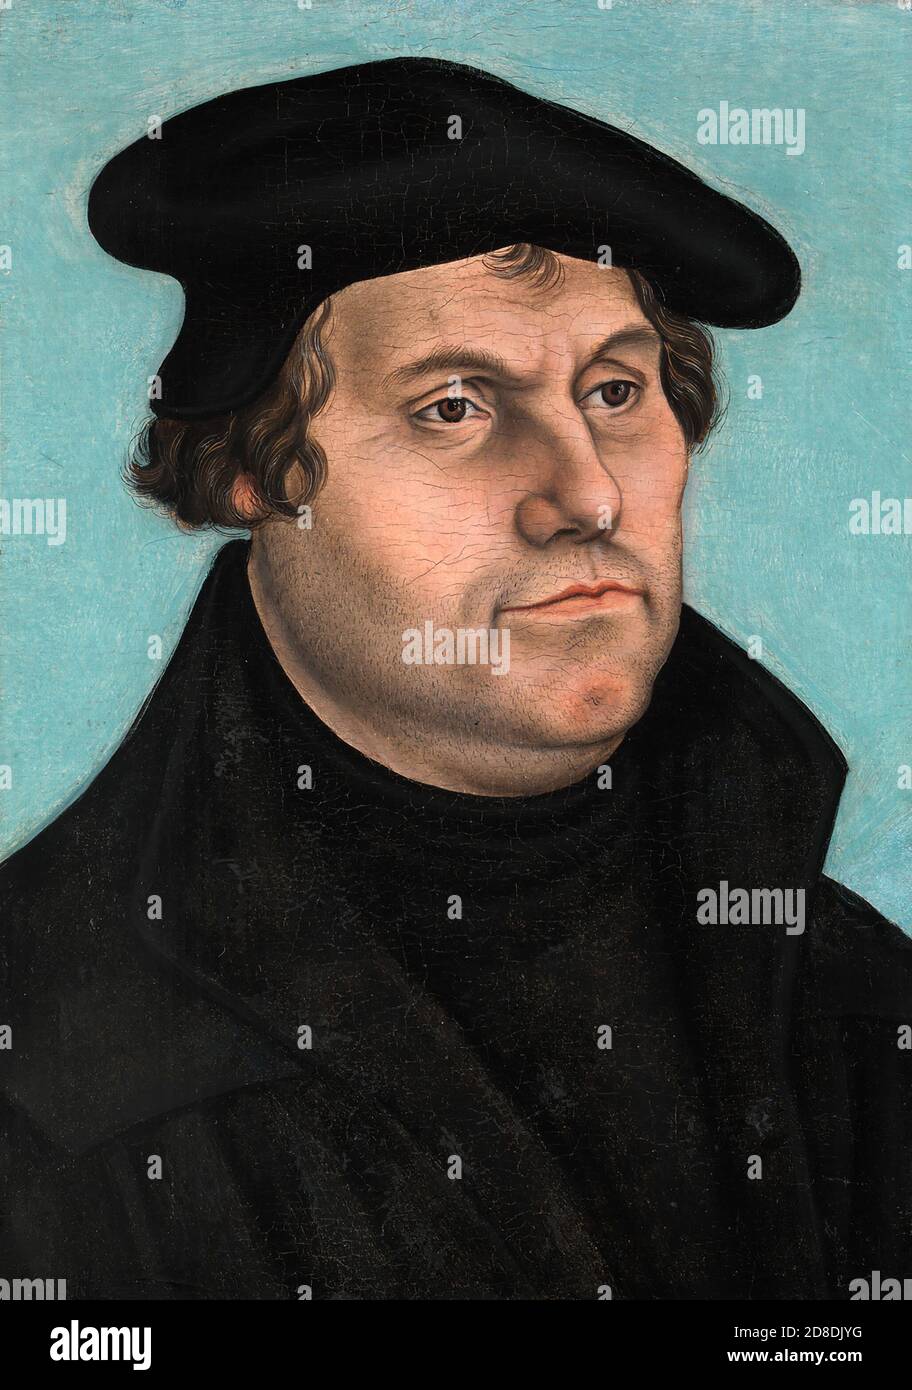 Martin Luther (1483-1546) fue un profesor alemán, teólogo, y figura clave en la Reforma Protestante, así como un traductor de la Biblia en la lengua vernácula alemana. Foto de stock